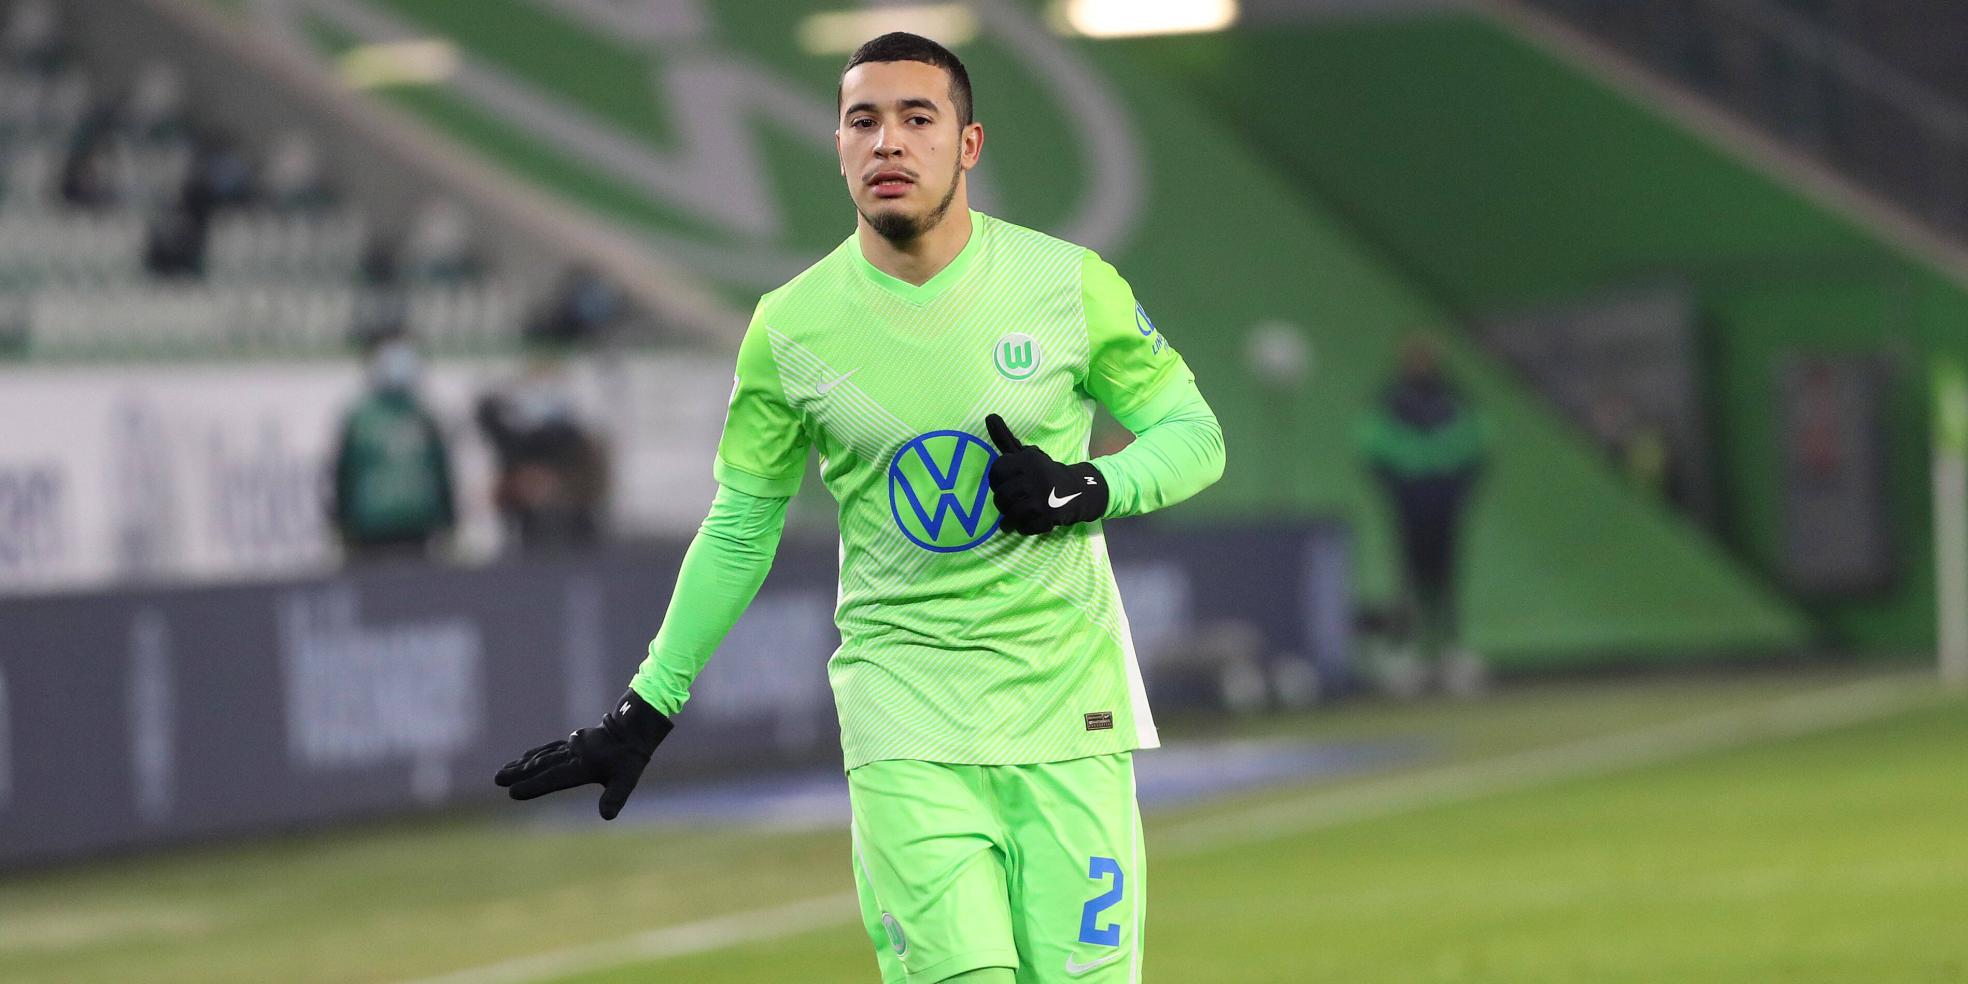 William wechselt wohl von Wolfsburg zu Schalke